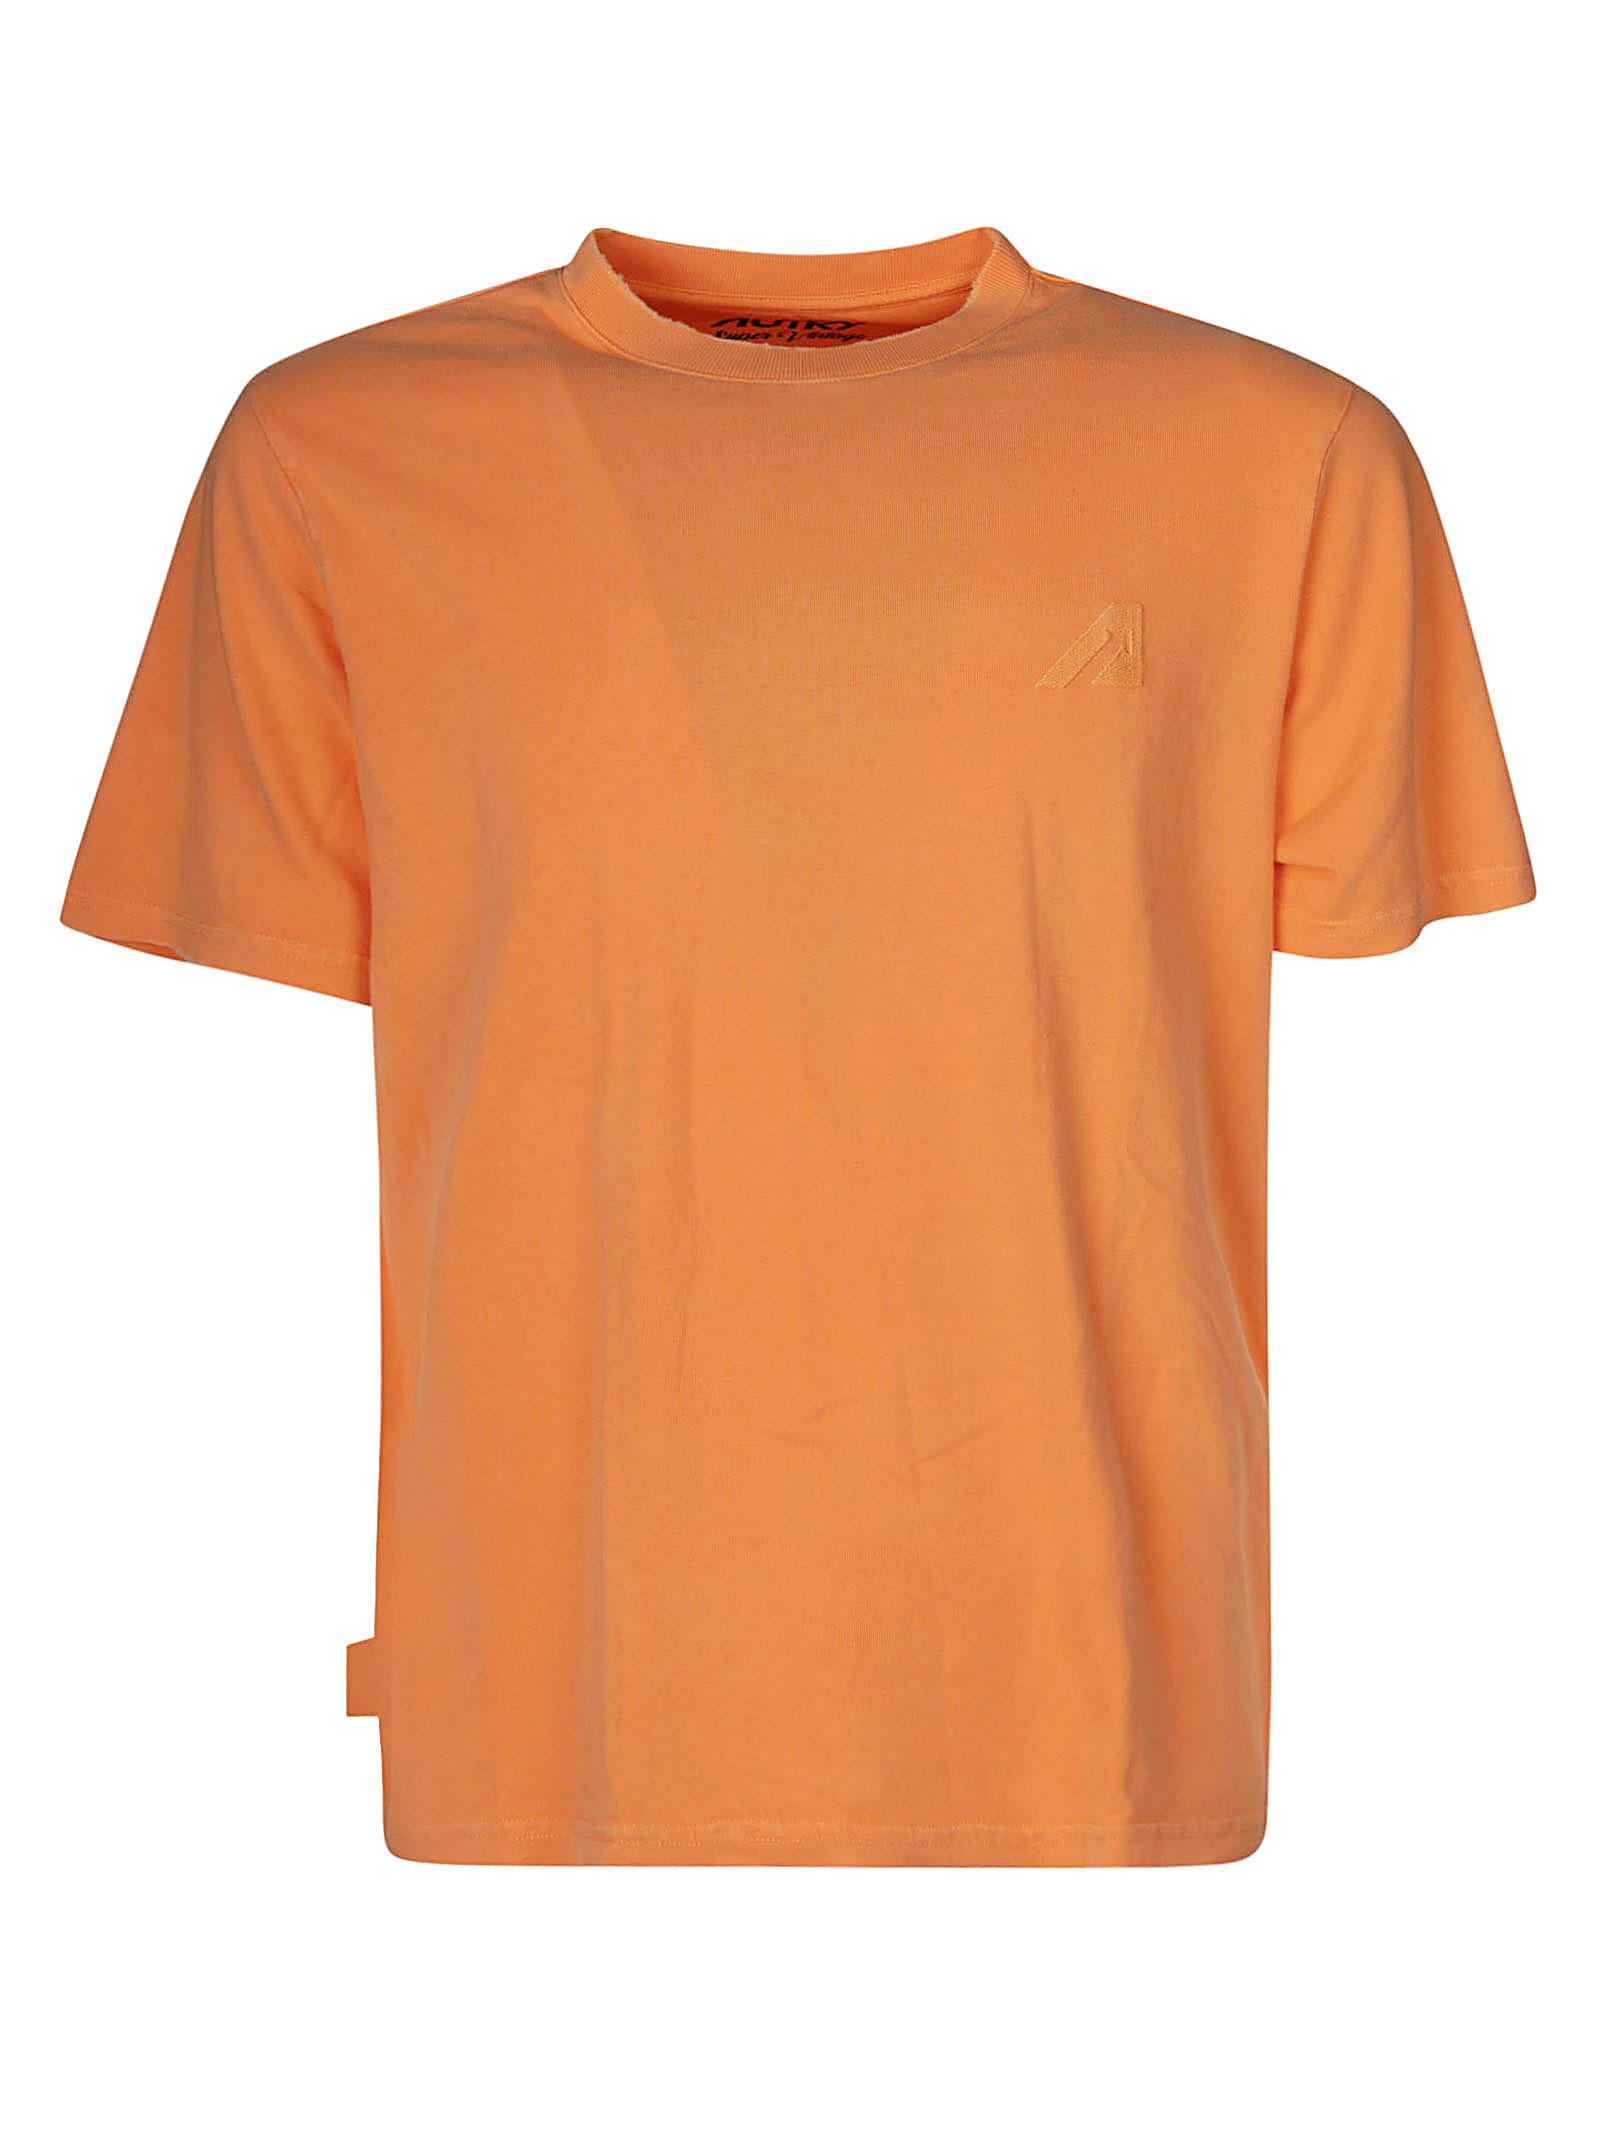 Autry Super Vintage T-shirt In Orange